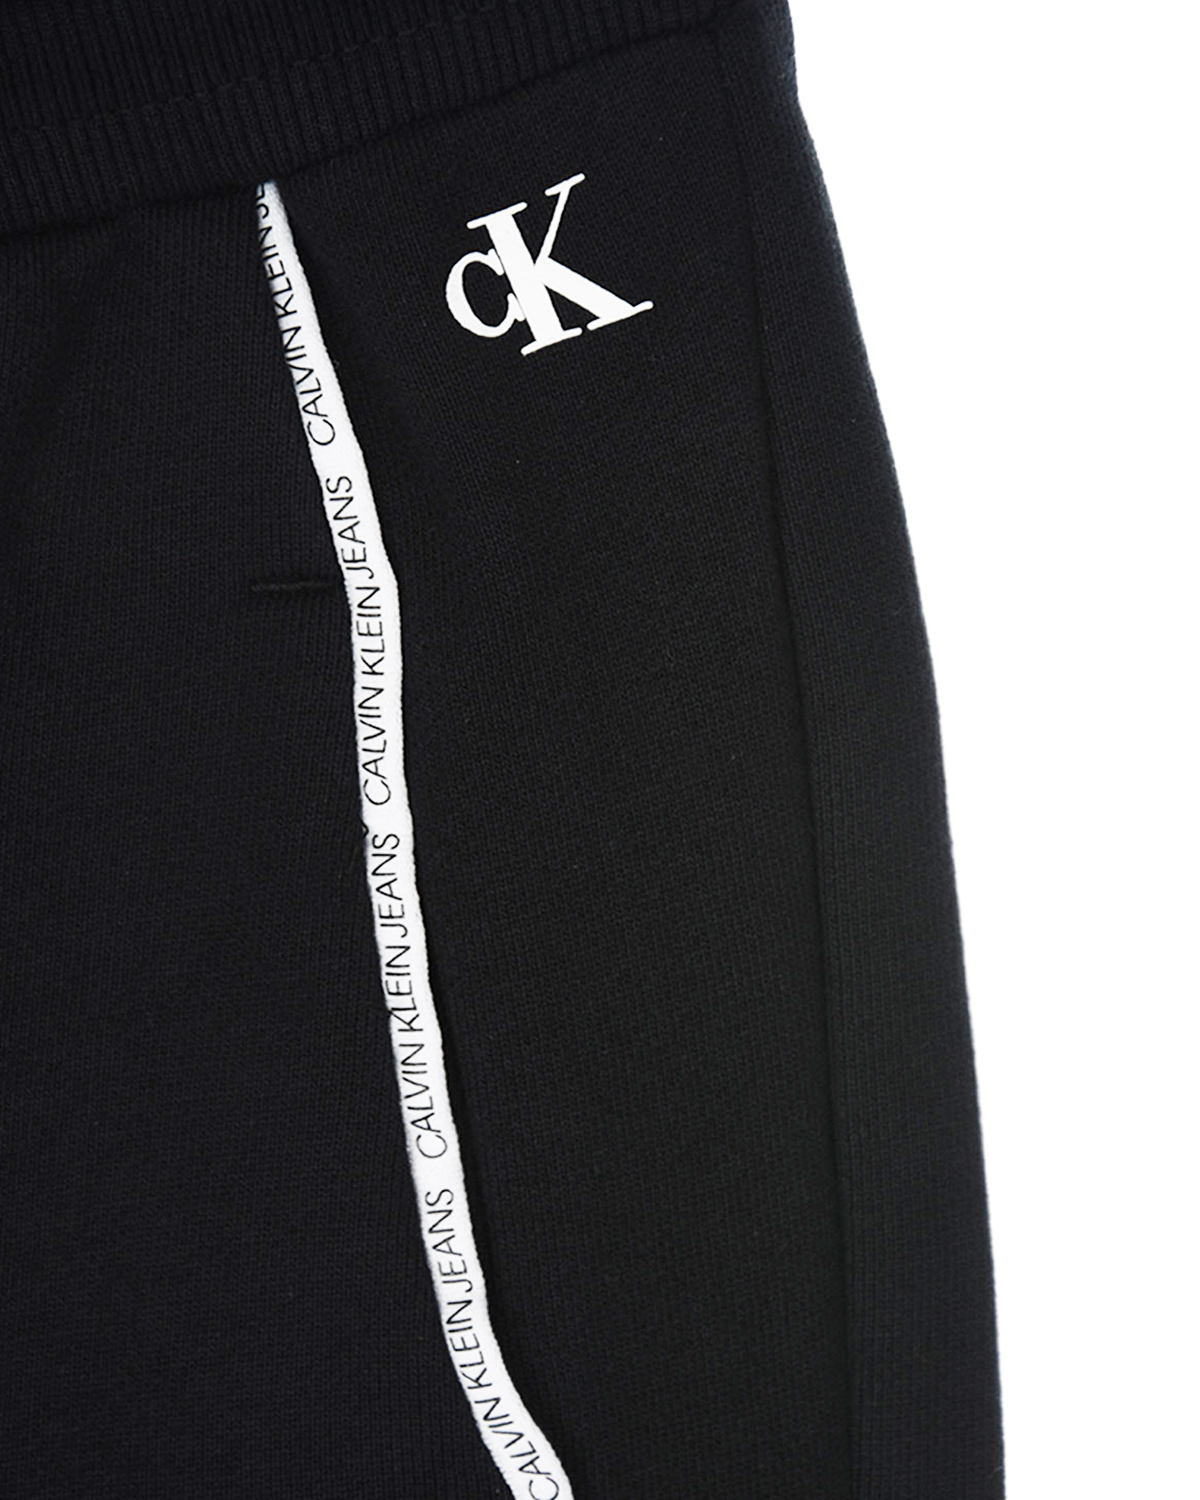 Спортивные брюки с брендированным кантом Calvin Klein детские, размер 152, цвет черный - фото 3